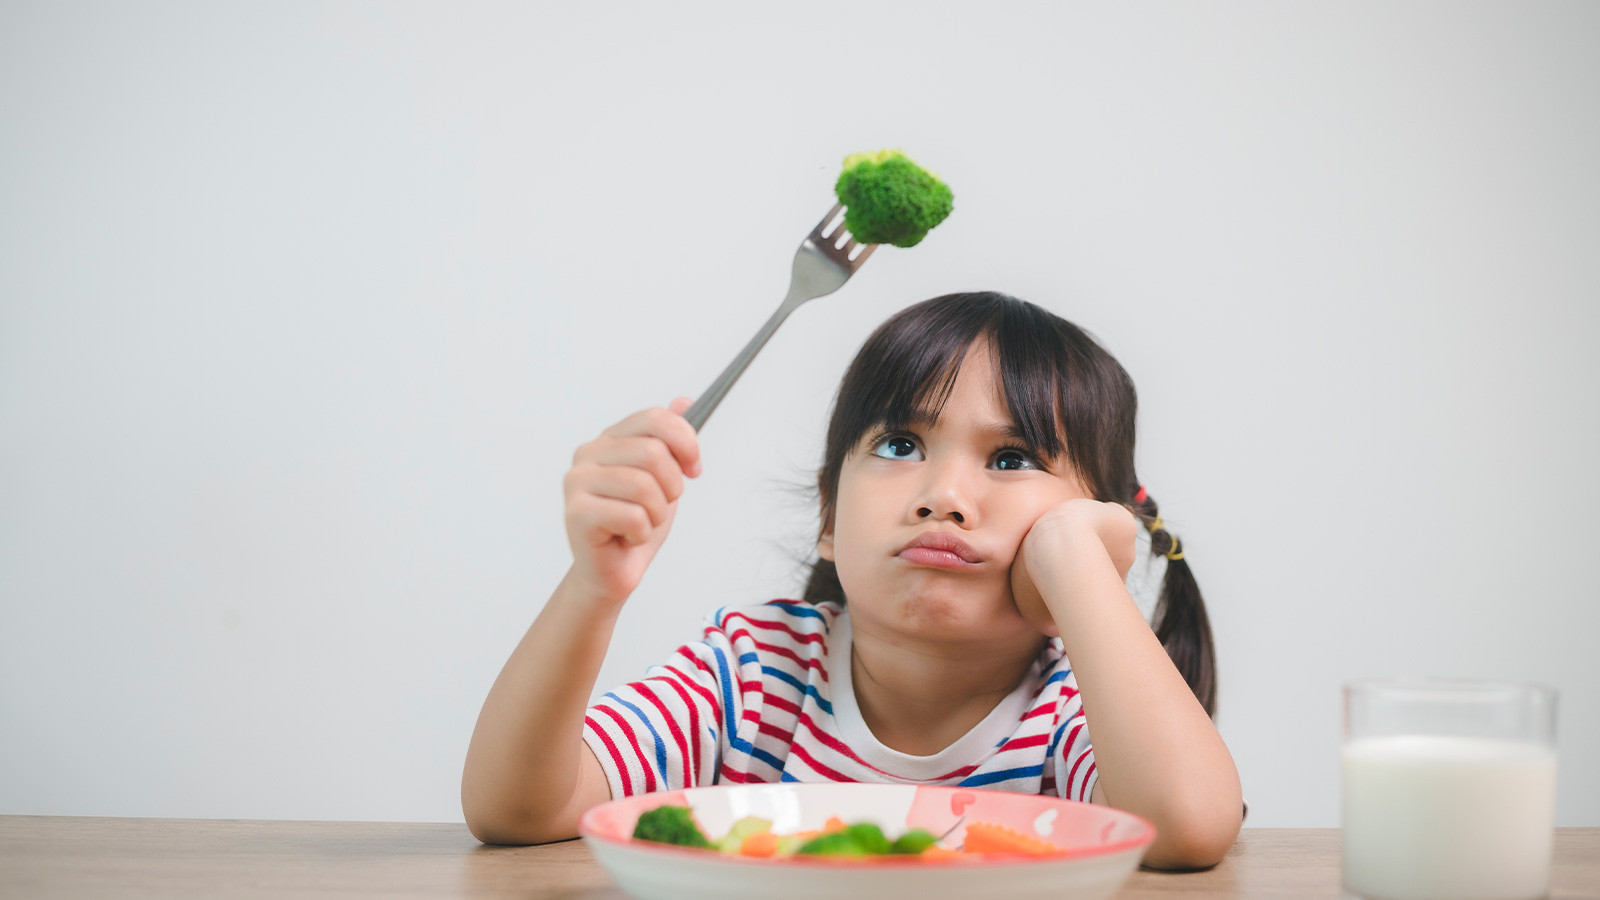 Çocuklar neden yemek seçer? Ebeveynlere düşen görev nedir?